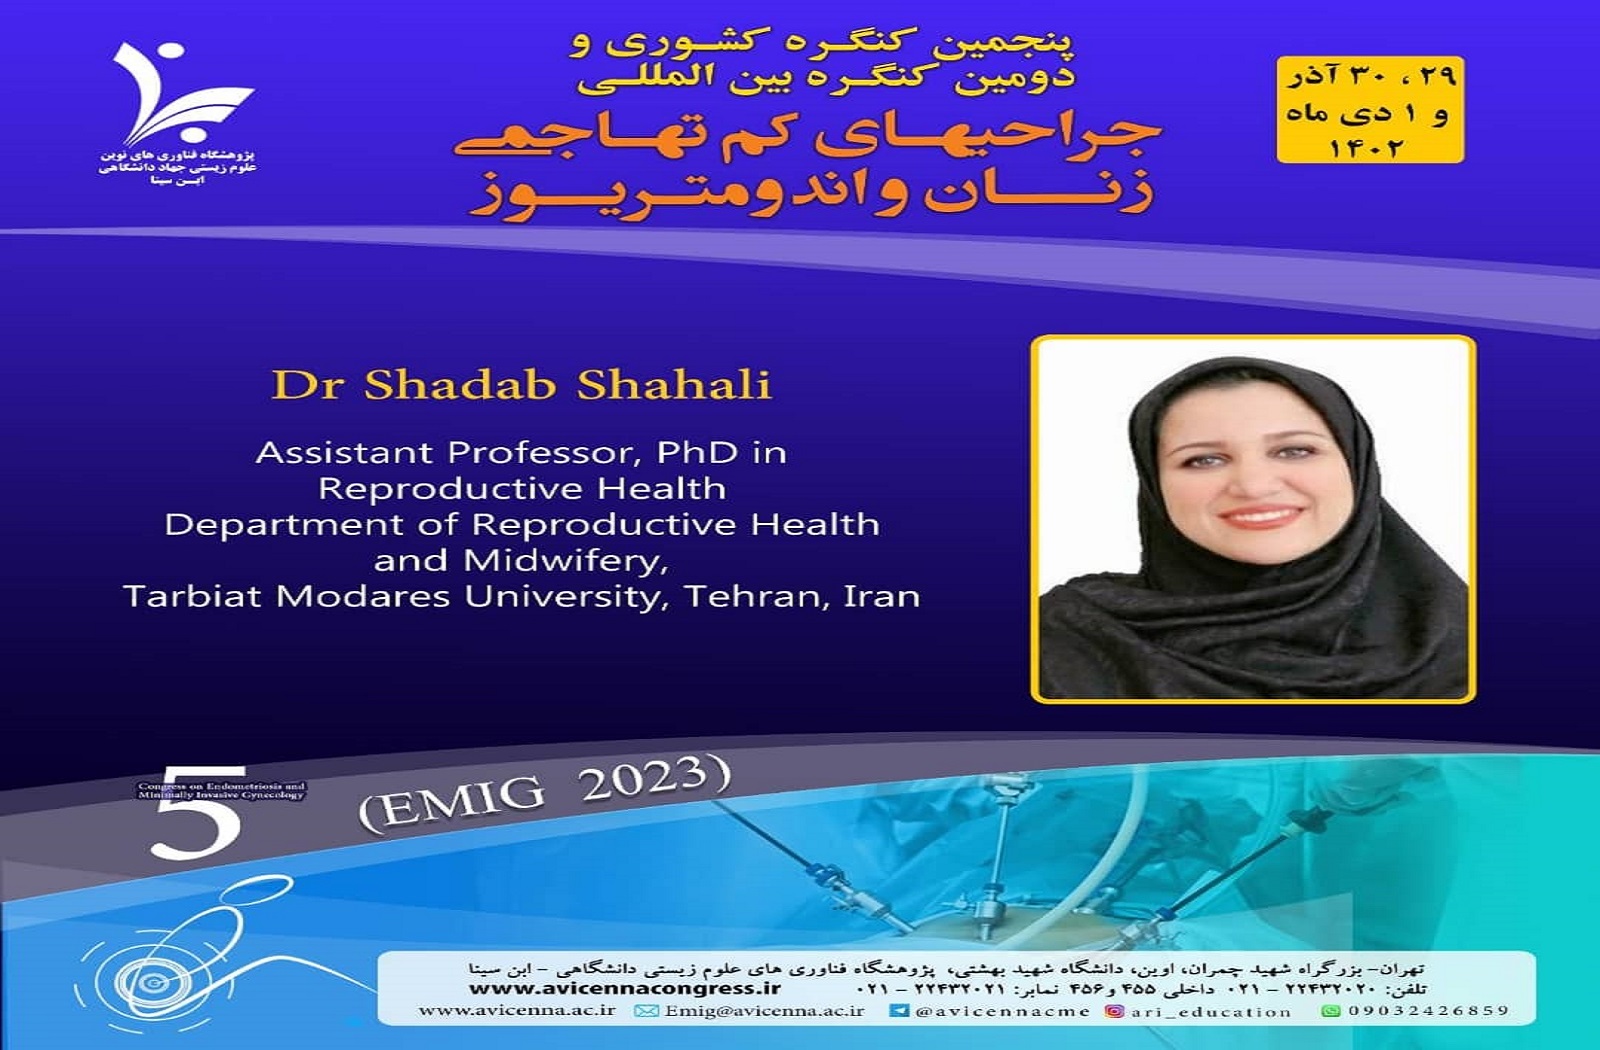 معرفی سرکارخانم دکتر شاداب شاه علی به عنوان سخنران و عضو شرکت کننده در کنگره بین المللی جراحی های کم تهاجمی زنان و اندومتریوز